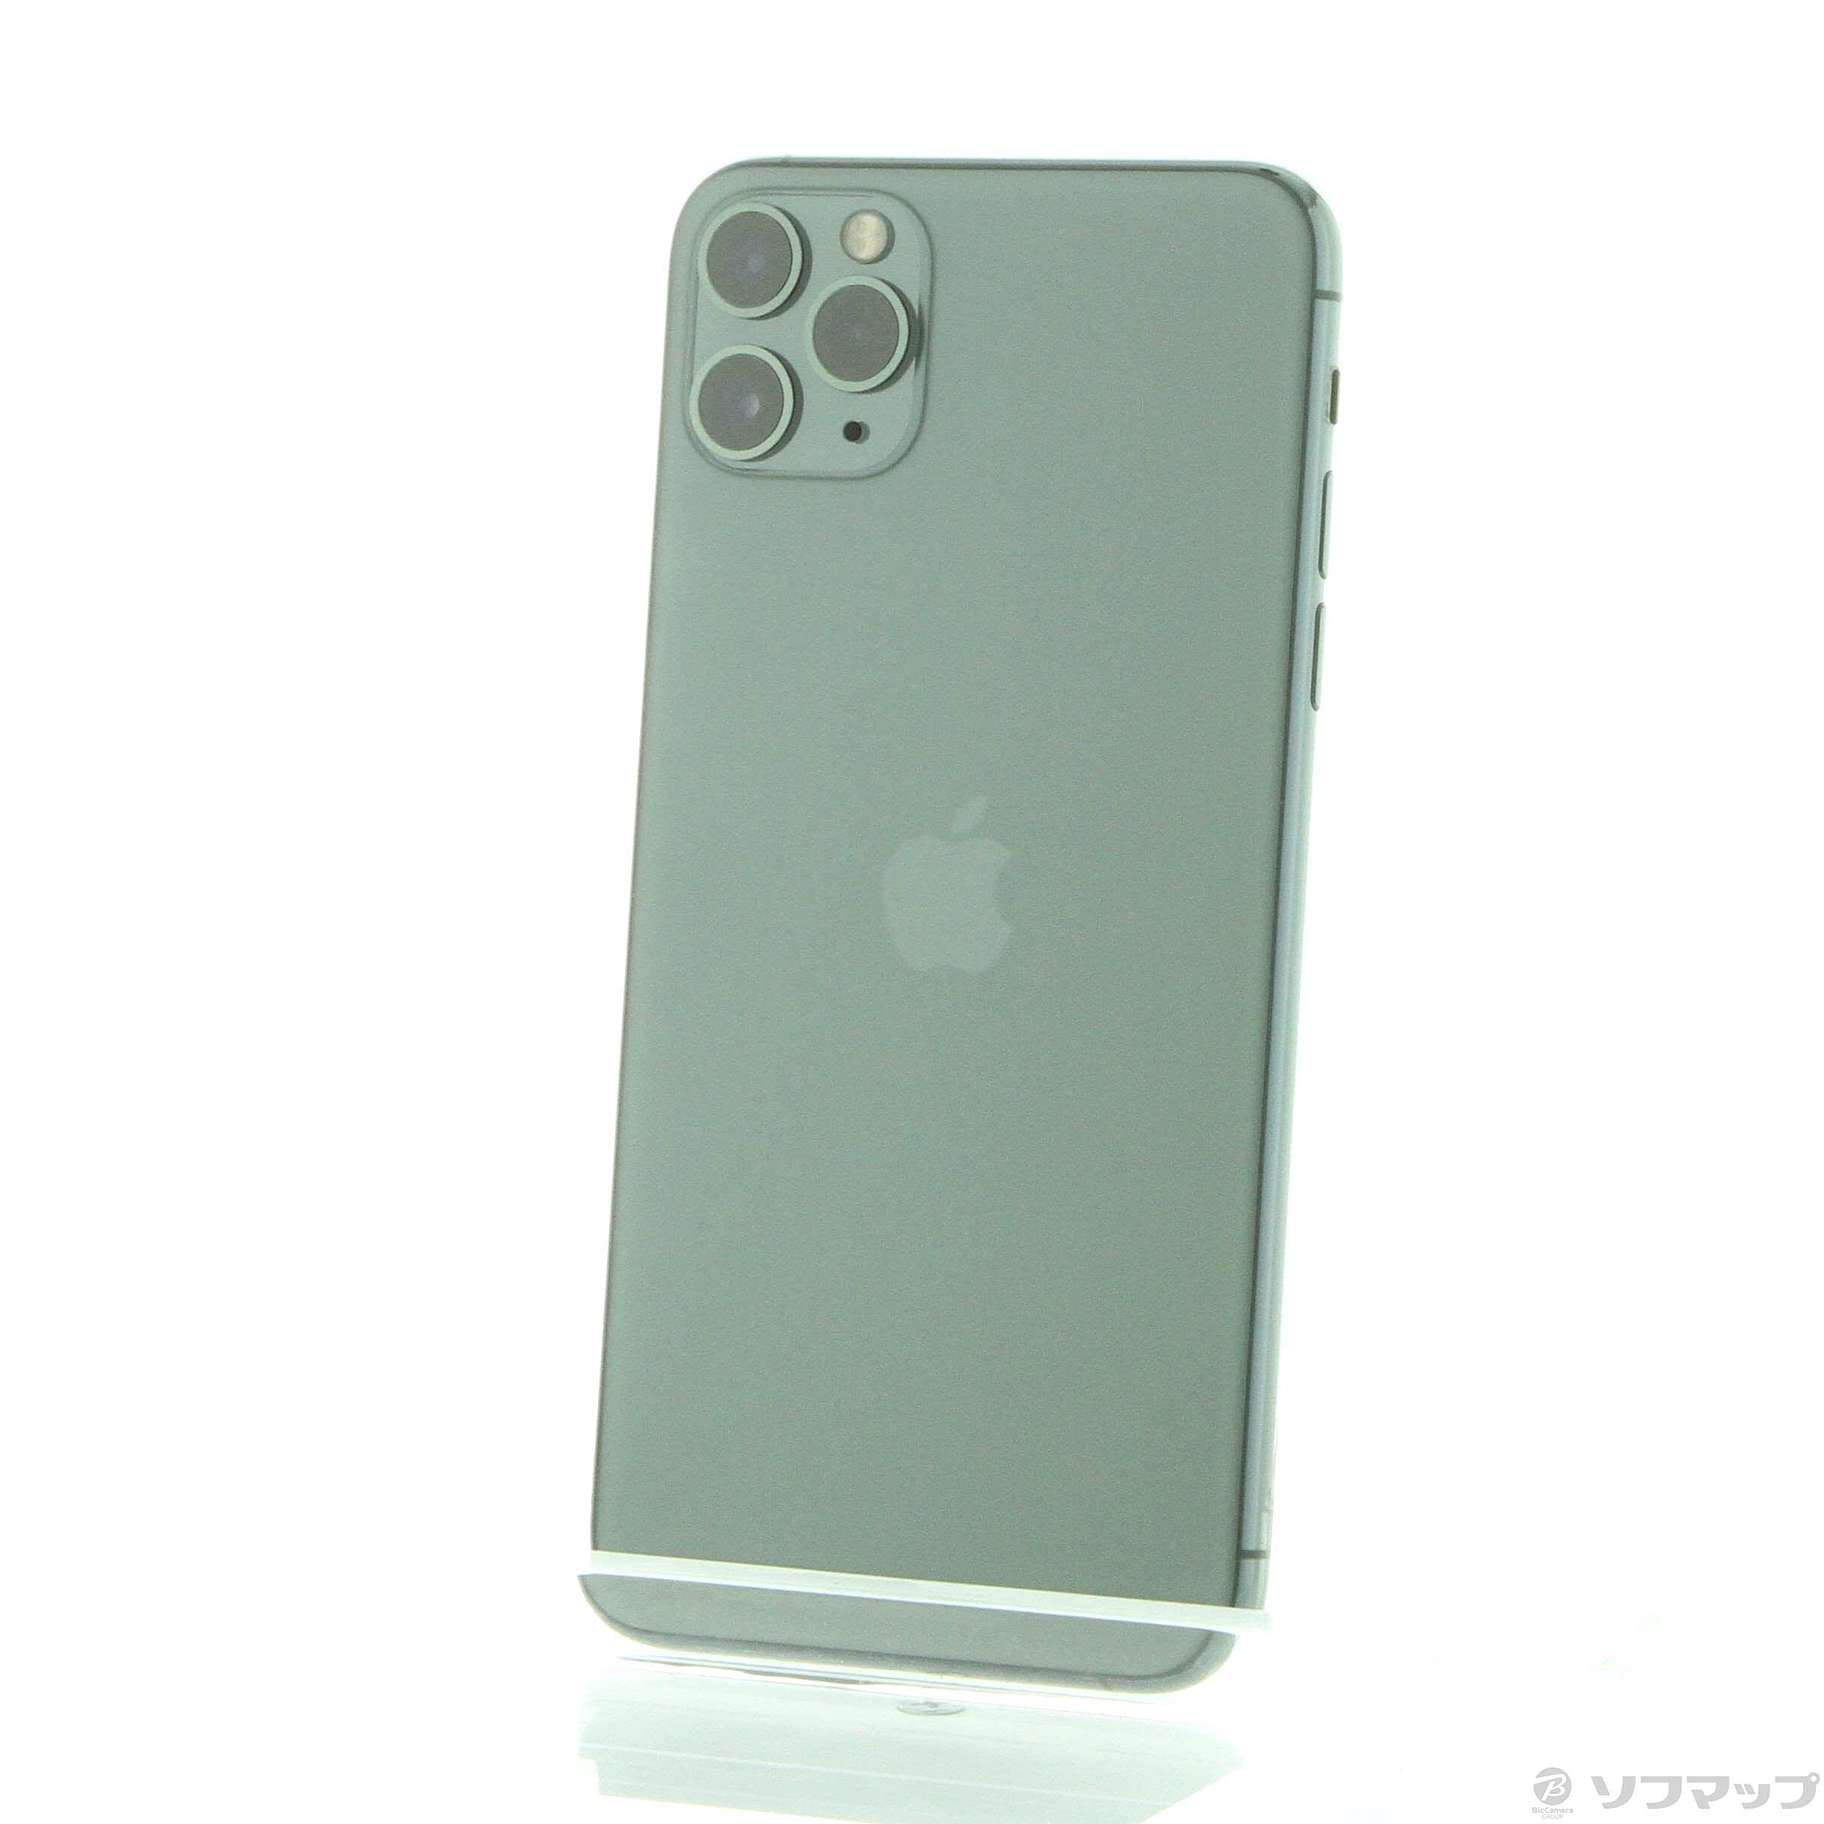 大特価!! 【即購入可能】iPhone 11 promax 64GB ミッドナイトグリーン スマートフォン本体